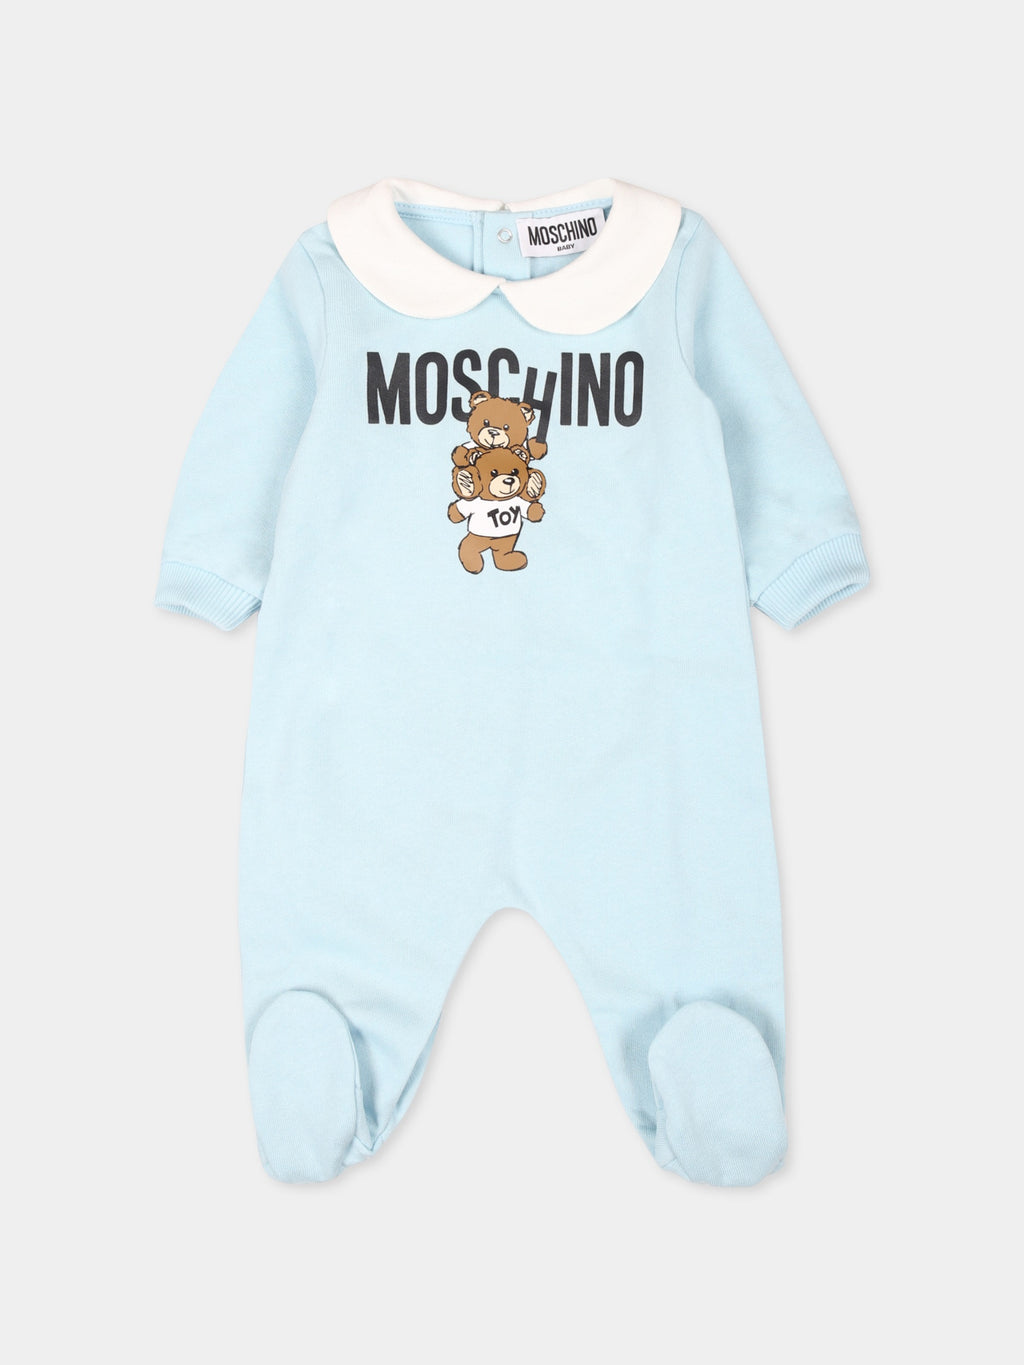 Combinaison bleu ciel pour bébé garçon avec deux Teddy Bears